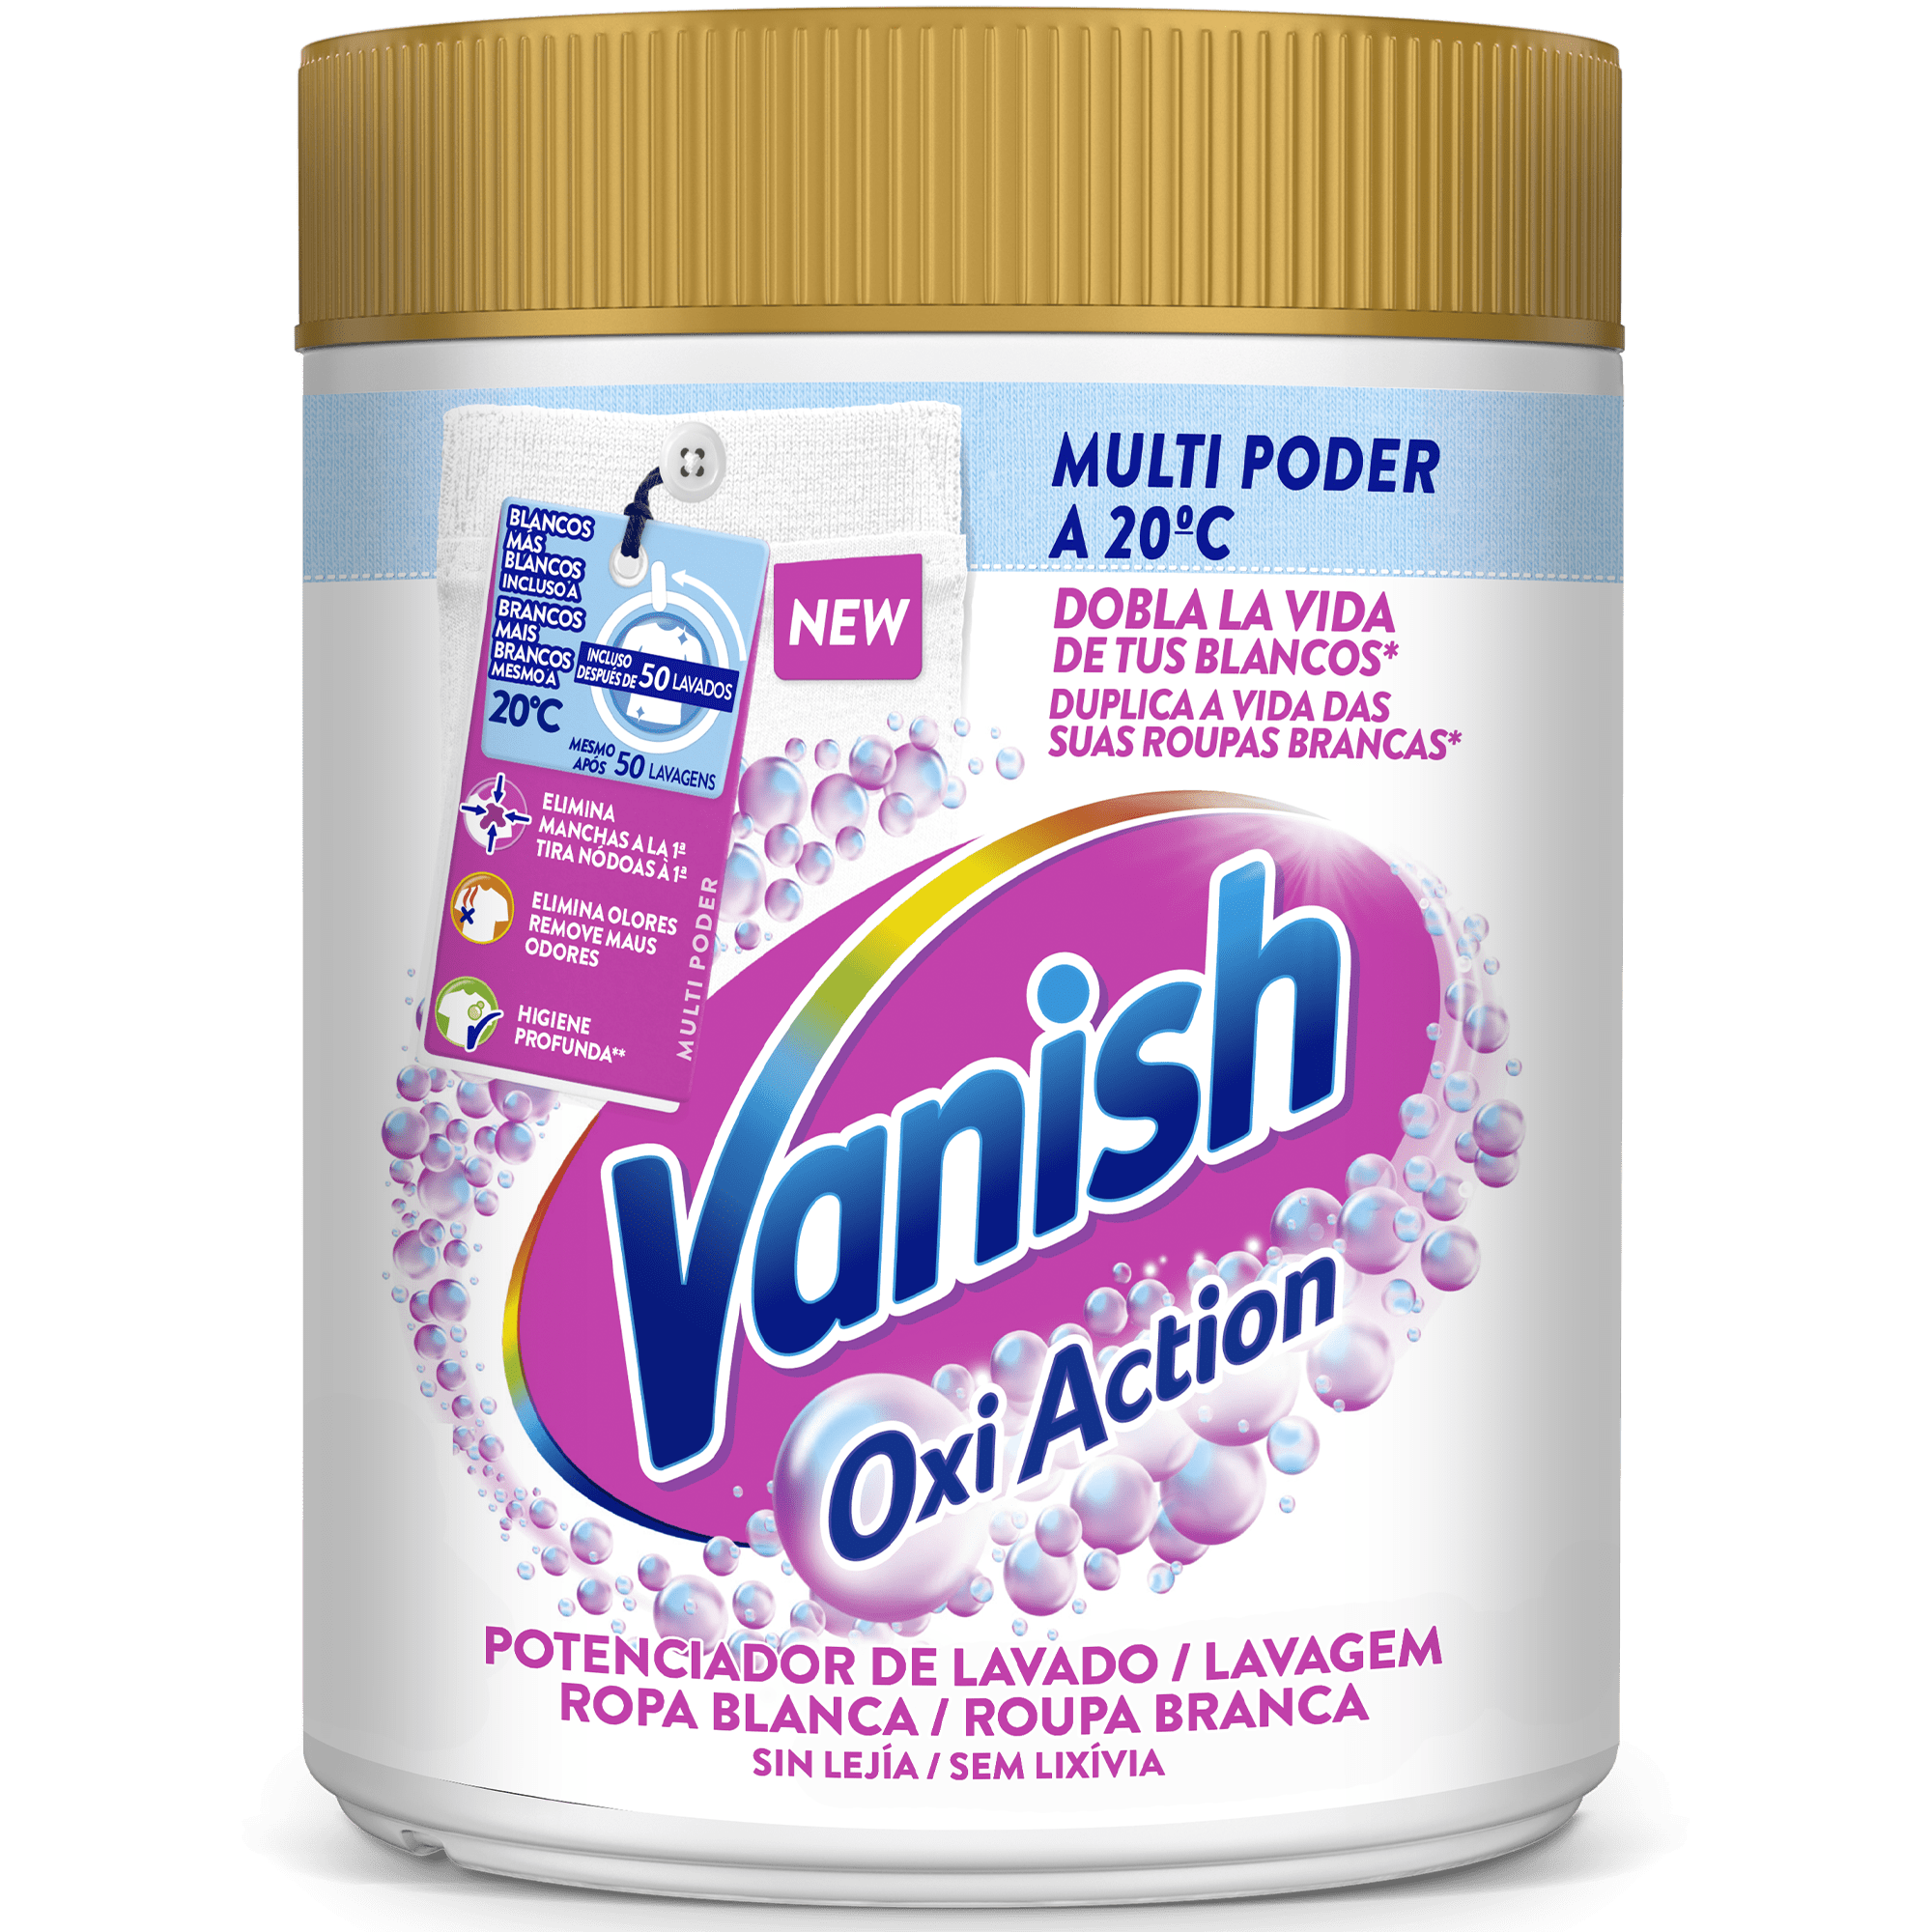 Vanish Oxi Action Multi Poder potenciador de lavado para ropa blanca y quitamanchas en polvo